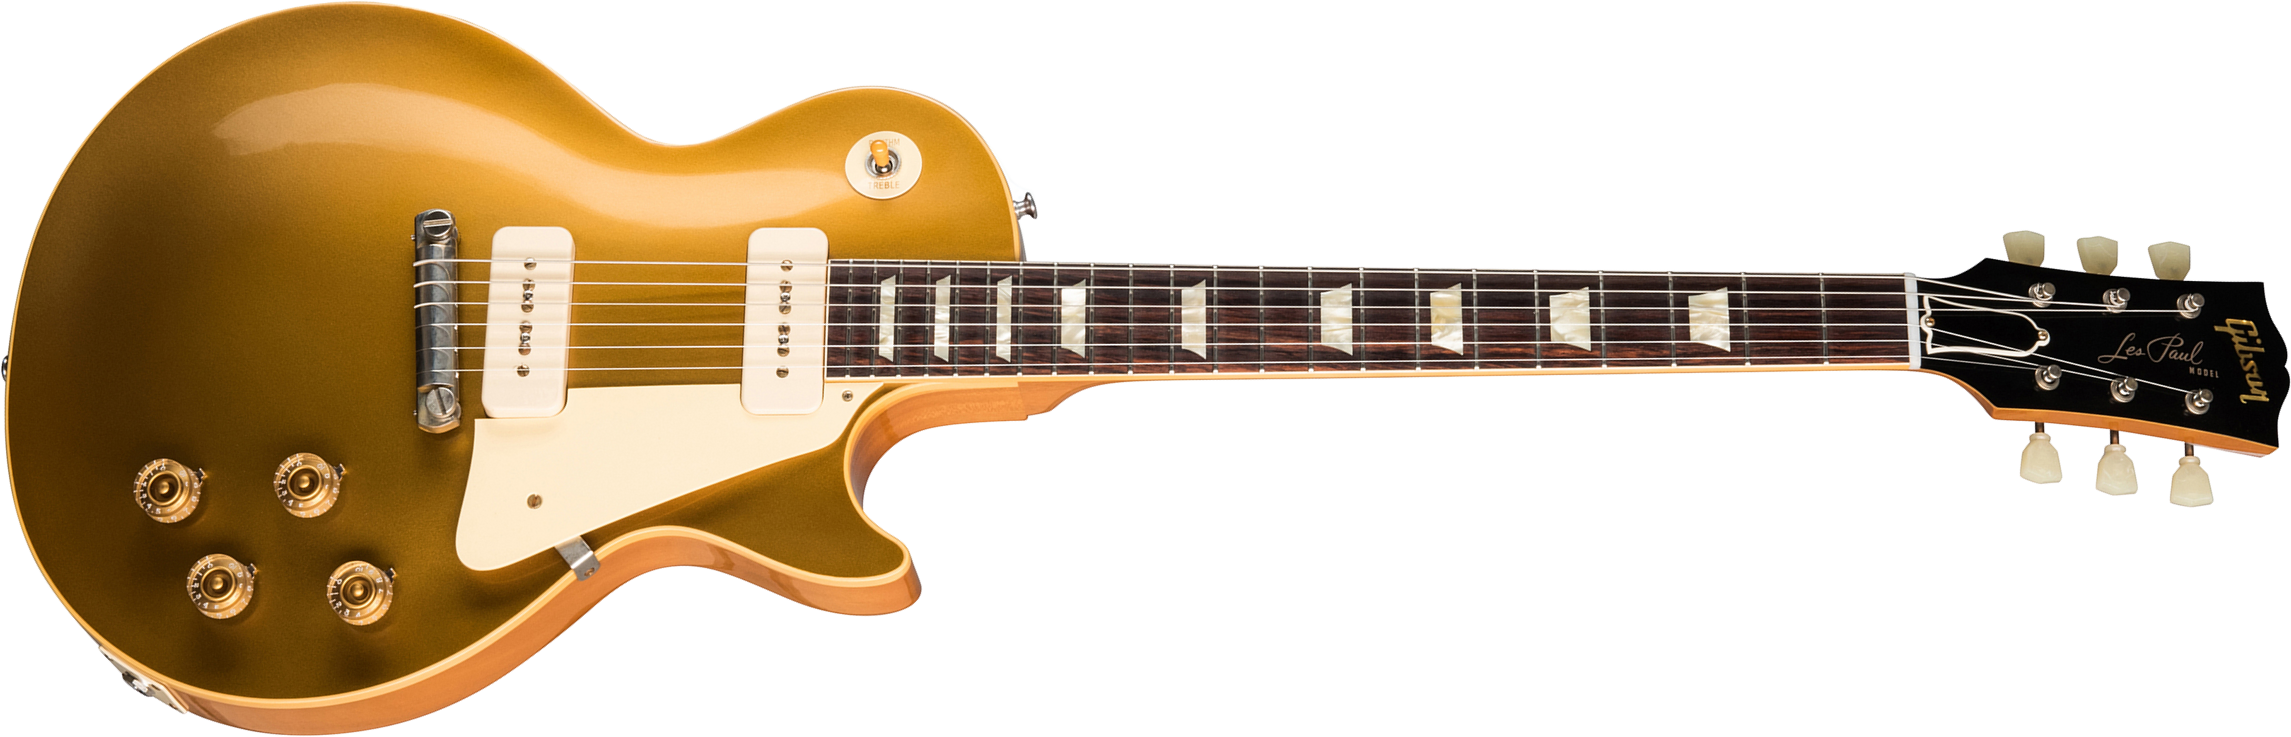 Gibson Custom Shop Les Paul Goldtop 1954 Reissue 2019 2p90 Ht Rw - Vos Double Gold - Guitare Électrique Single Cut - Main picture